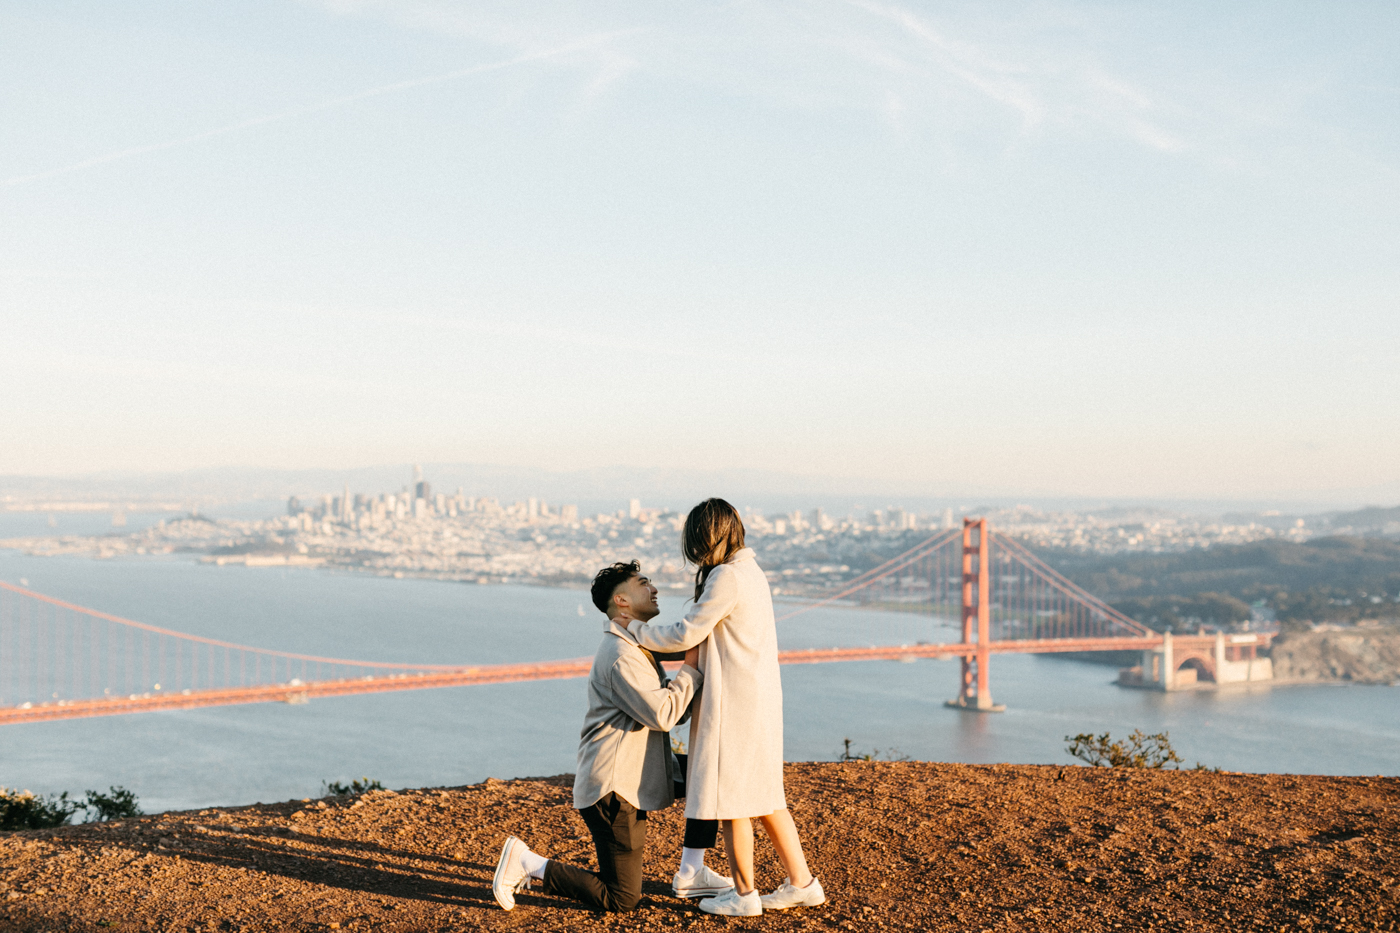 Proposal overlooking the Golden Gate Bridge in Marin Headlands.